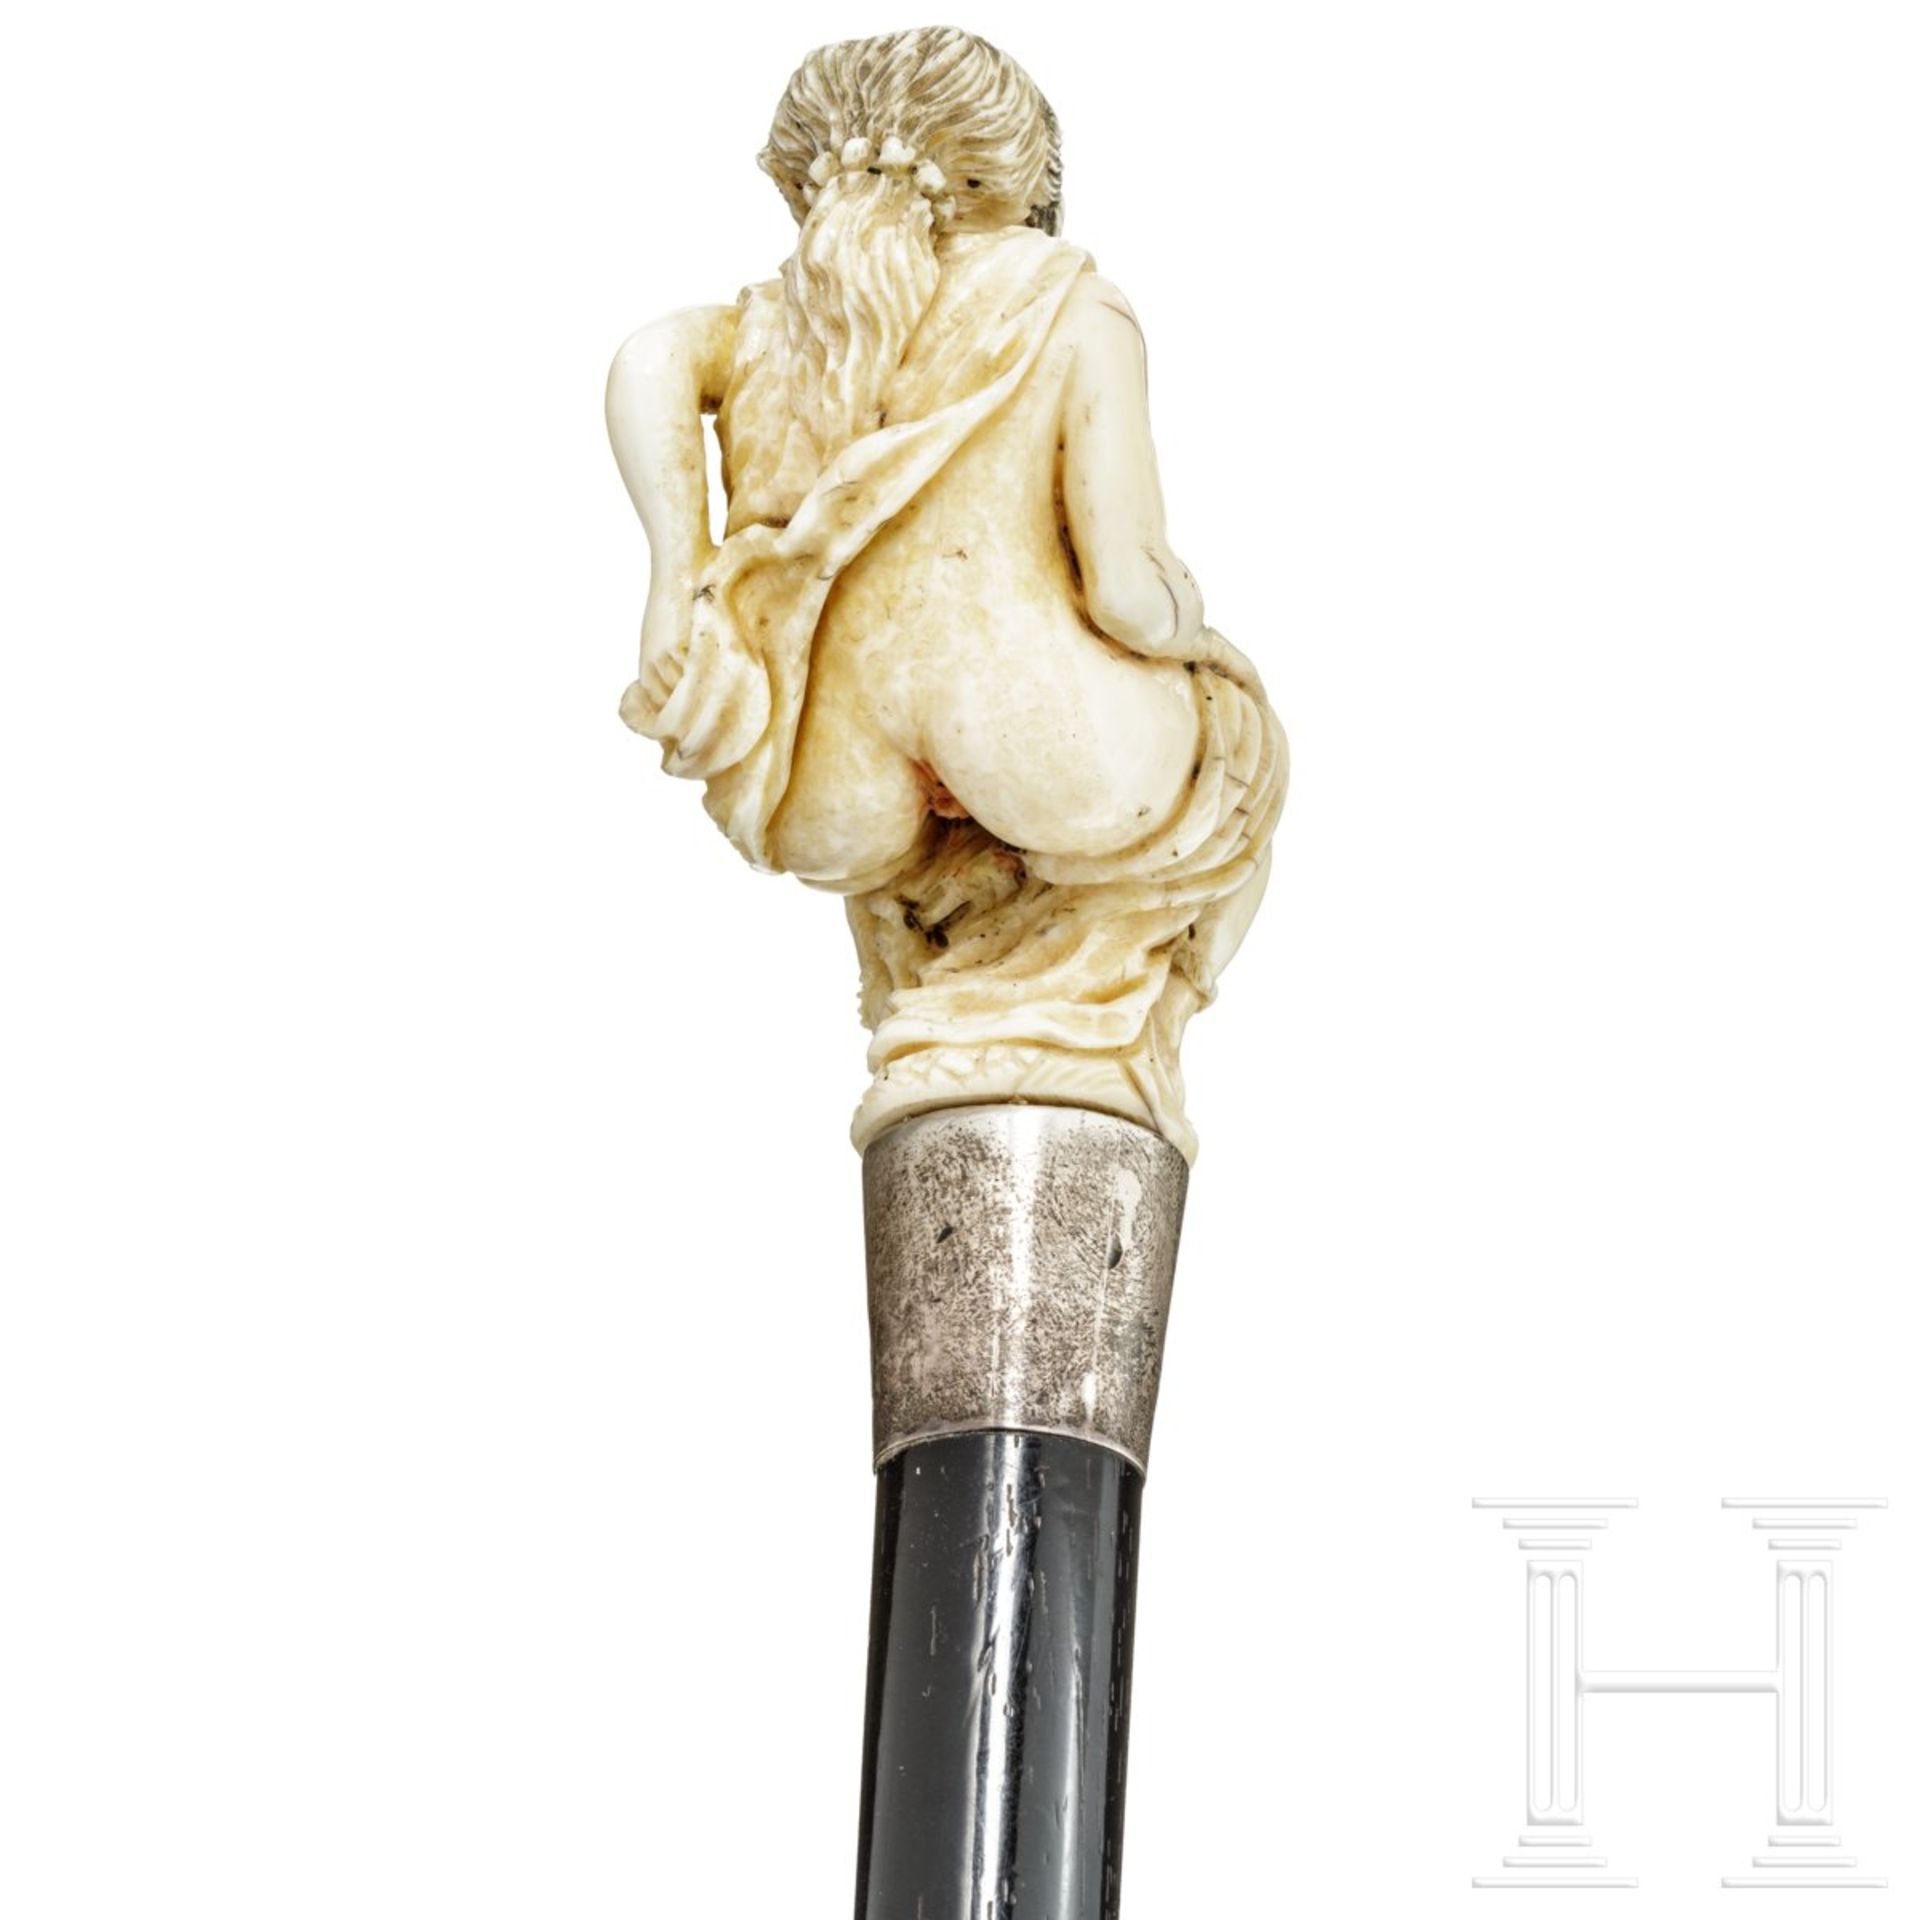 Erotischer Gehstock, England, spätes 19. Jhdt.Knauf aus Elfenbein mit leichter Farbfassung in Form - Bild 5 aus 5